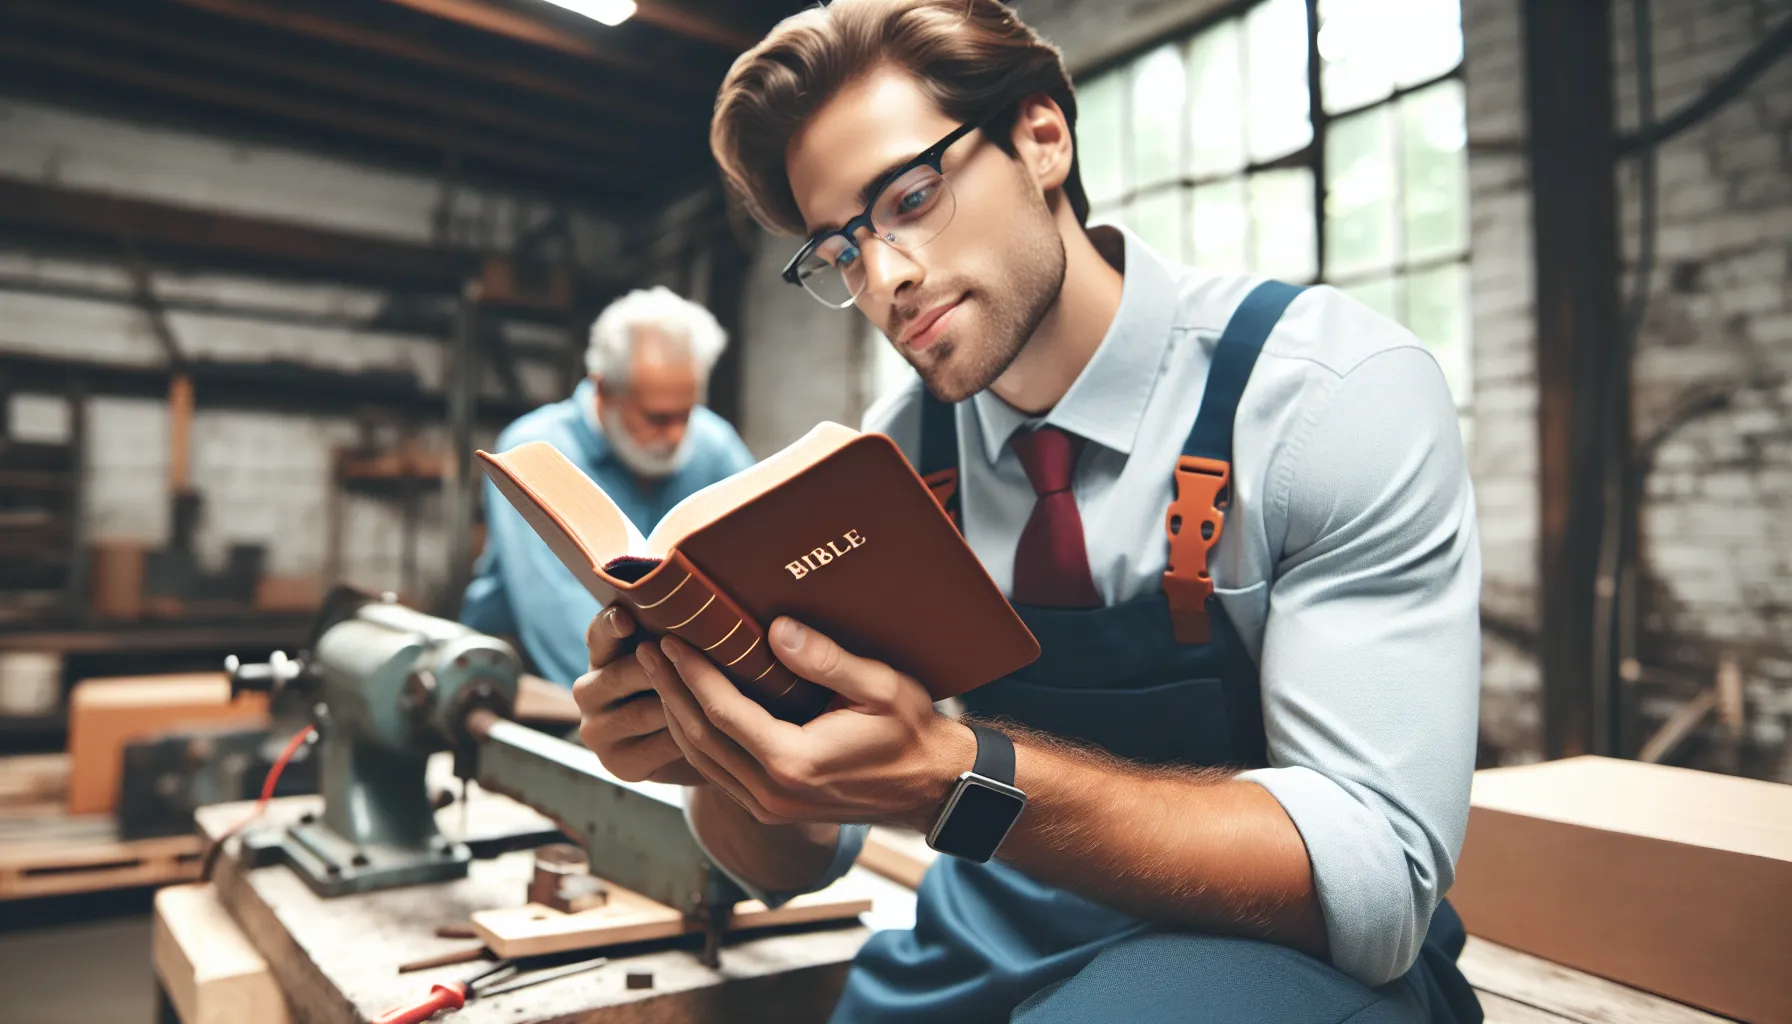 Imagen de un trabajador dedicado y satisfecho leyendo la Biblia mientras trabaja